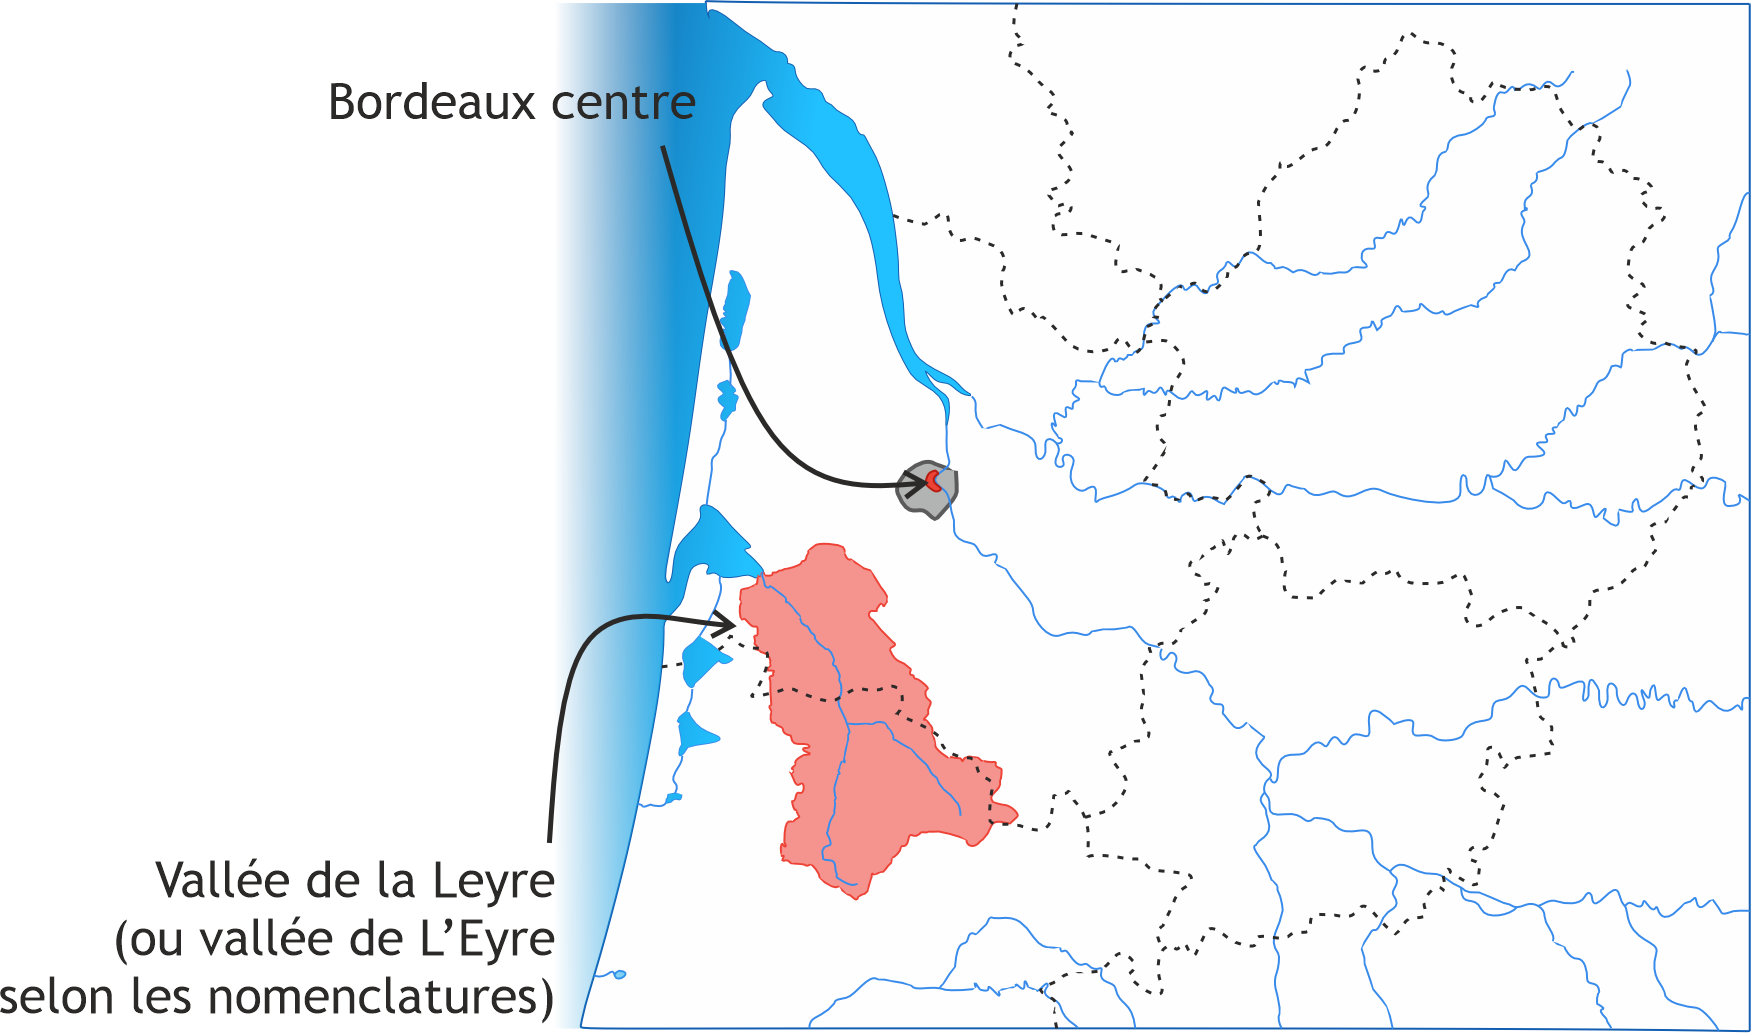 Extension de Bordeaux centre et de la vallée de la Leyre